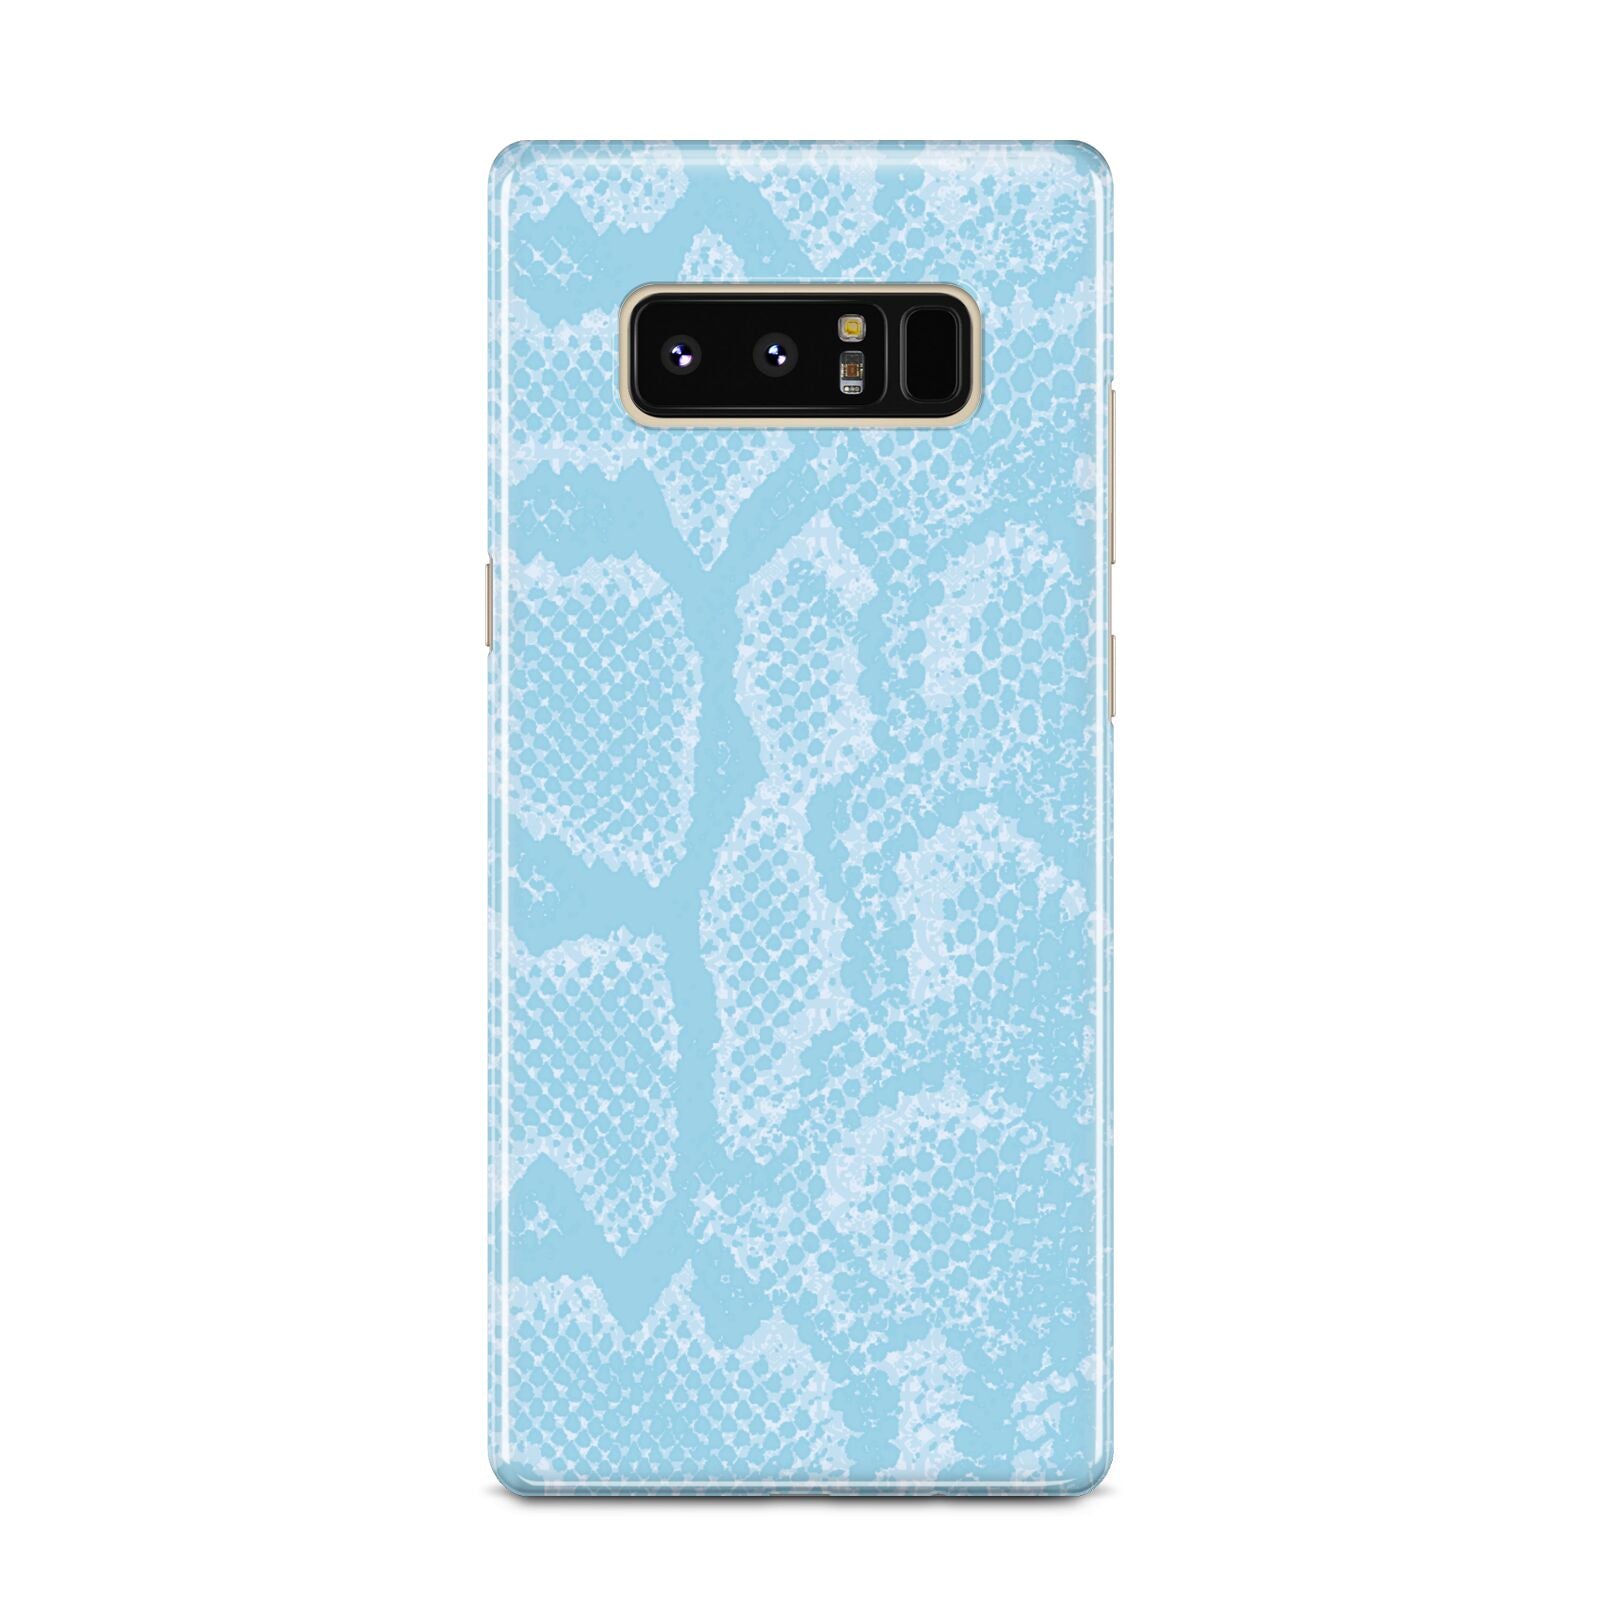 Blue Snakeskin Samsung Galaxy Note 8 Case